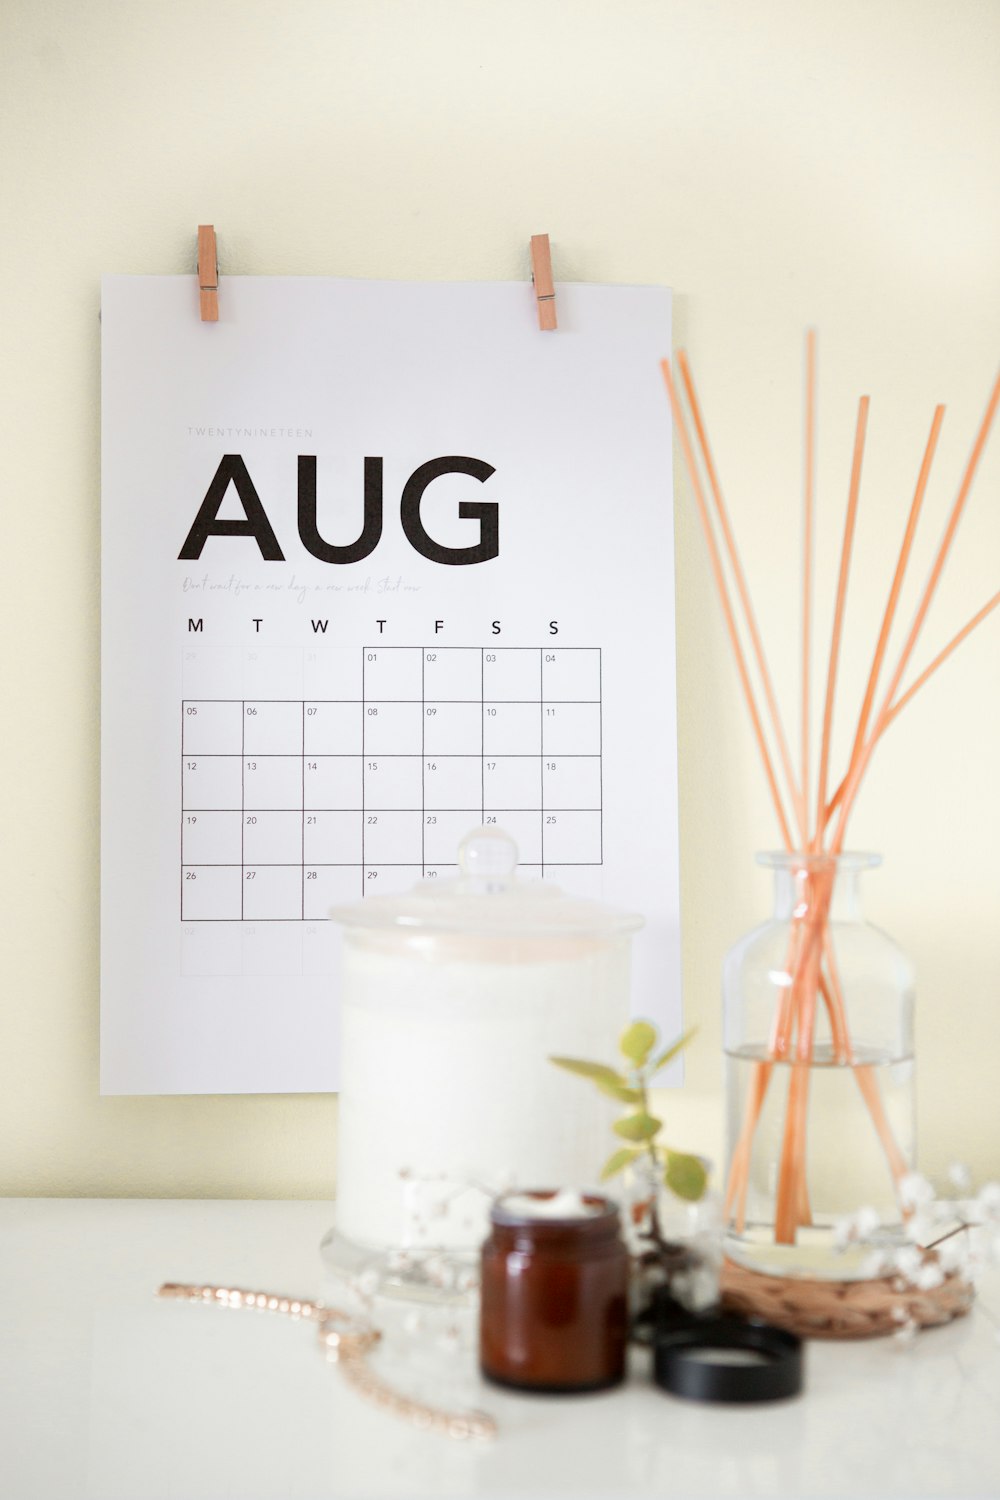 Aug-Kalender an der Wand